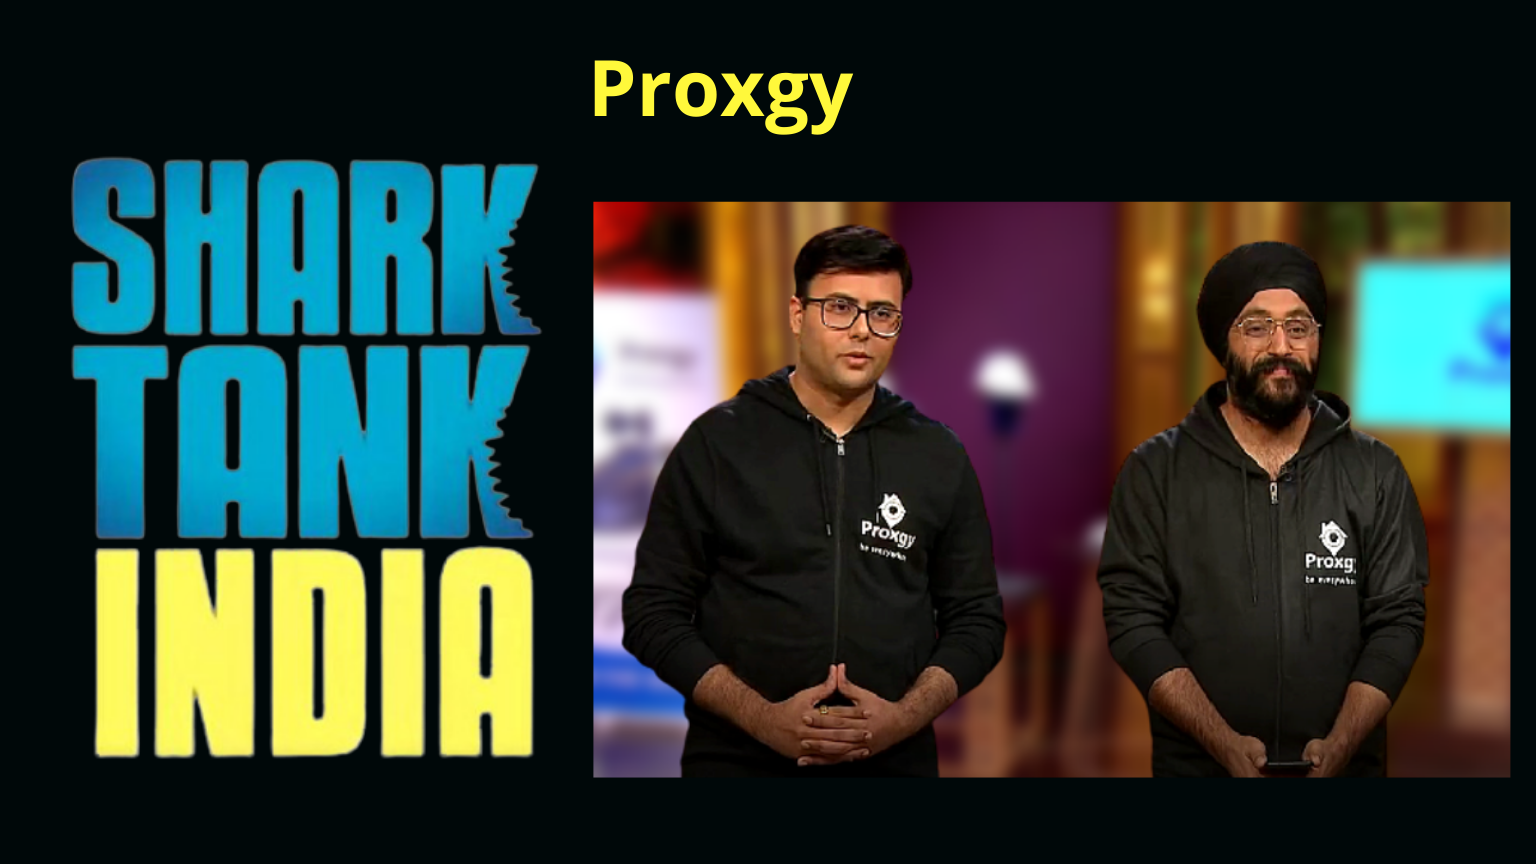 shark tank india product proxgy